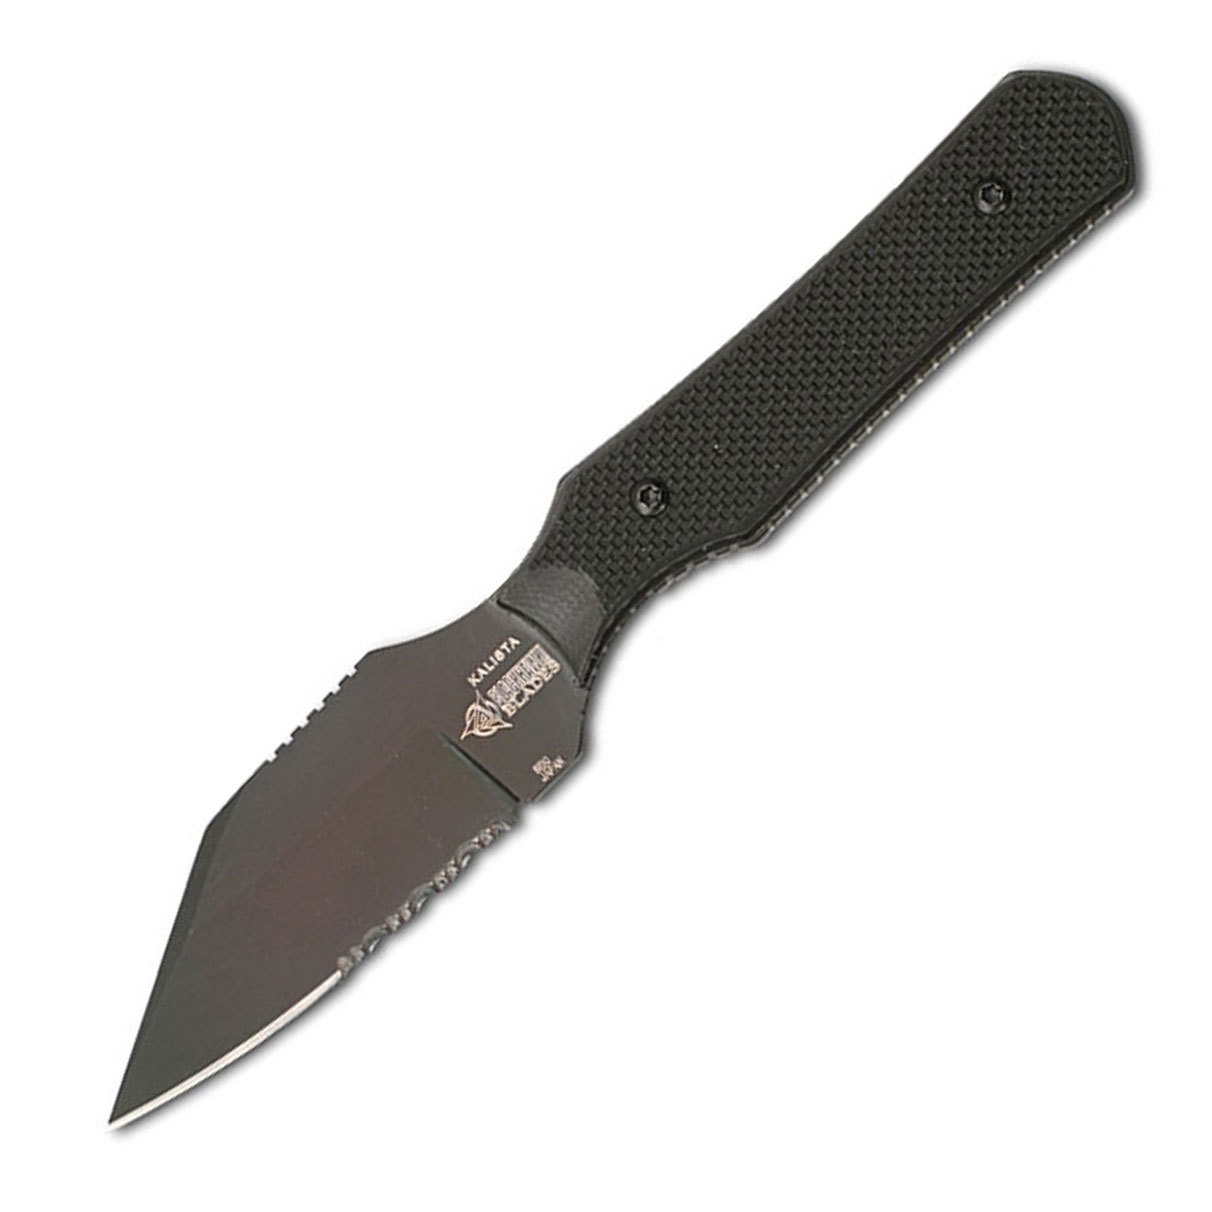 Нож MOD Blackhawk Kalista Combo, сталь ATS-34, рукоять стеклотекстолит G-10